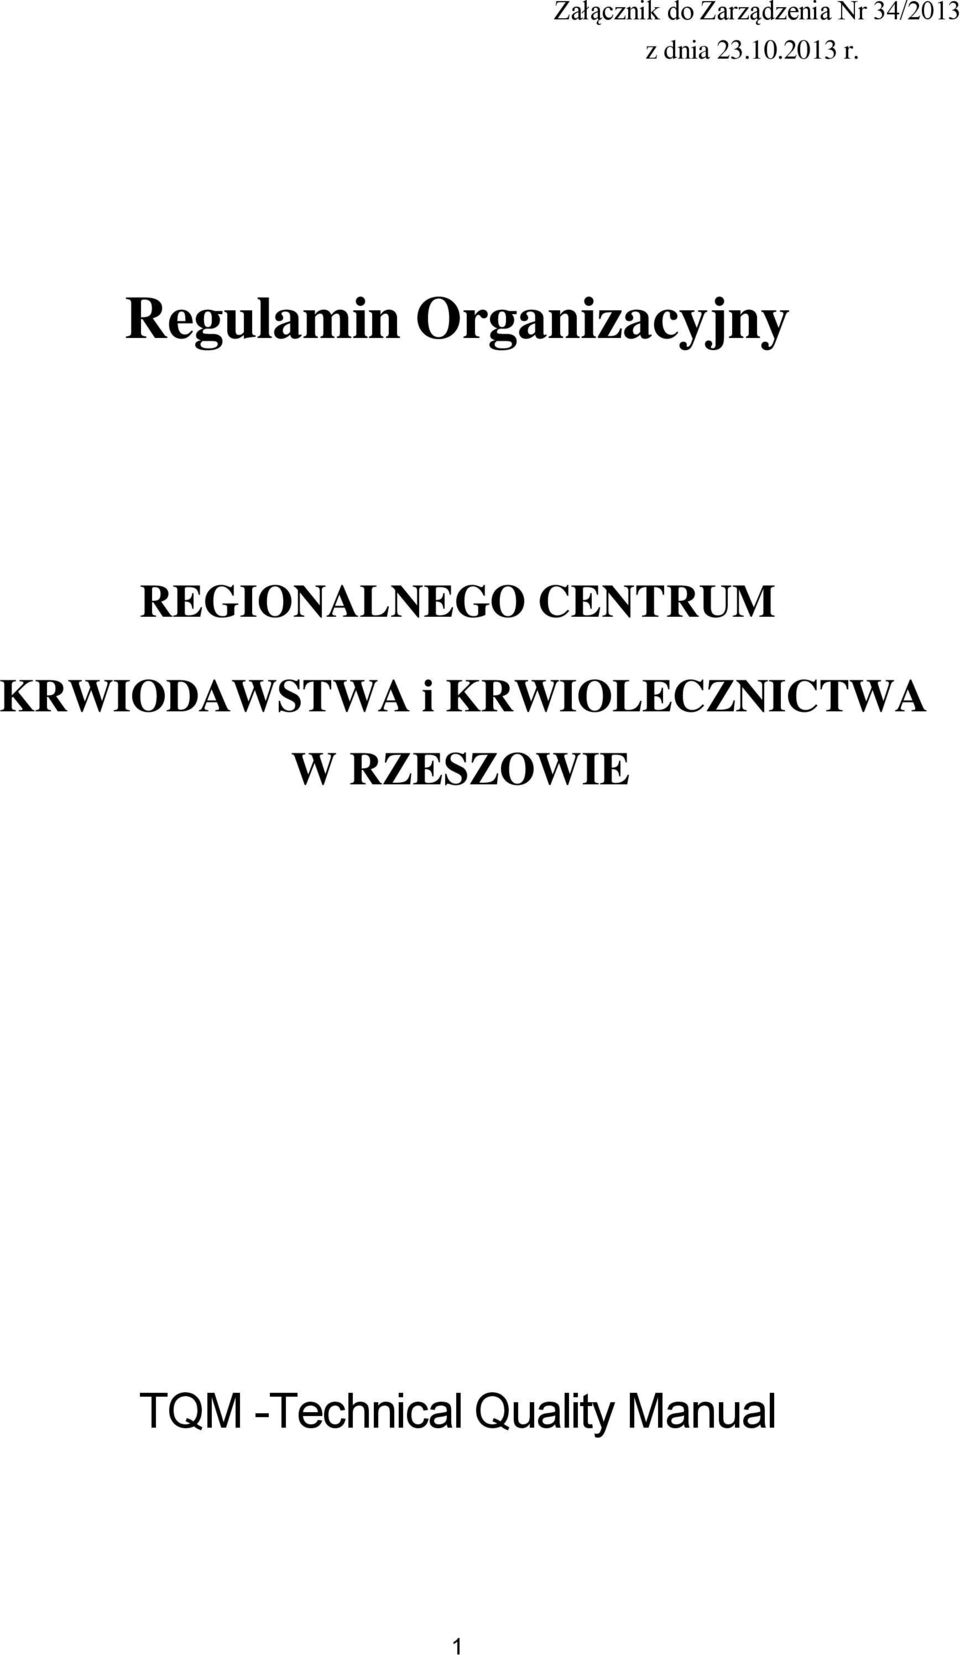 Regulamin Organizacyjny REGIONALNEGO